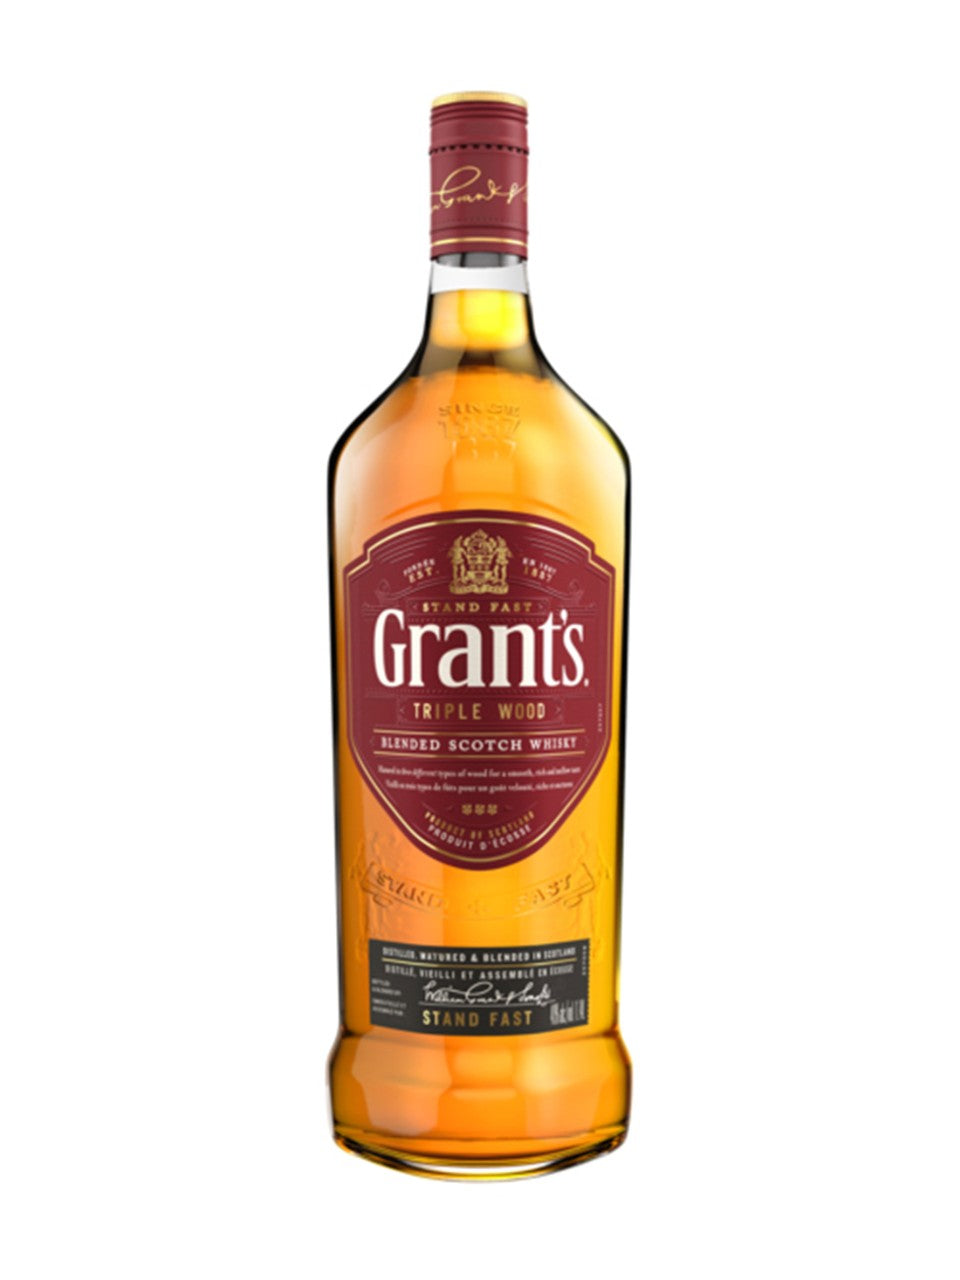 Grant's Triple Wood Blended Scotch Whisky 1140 mL bottle